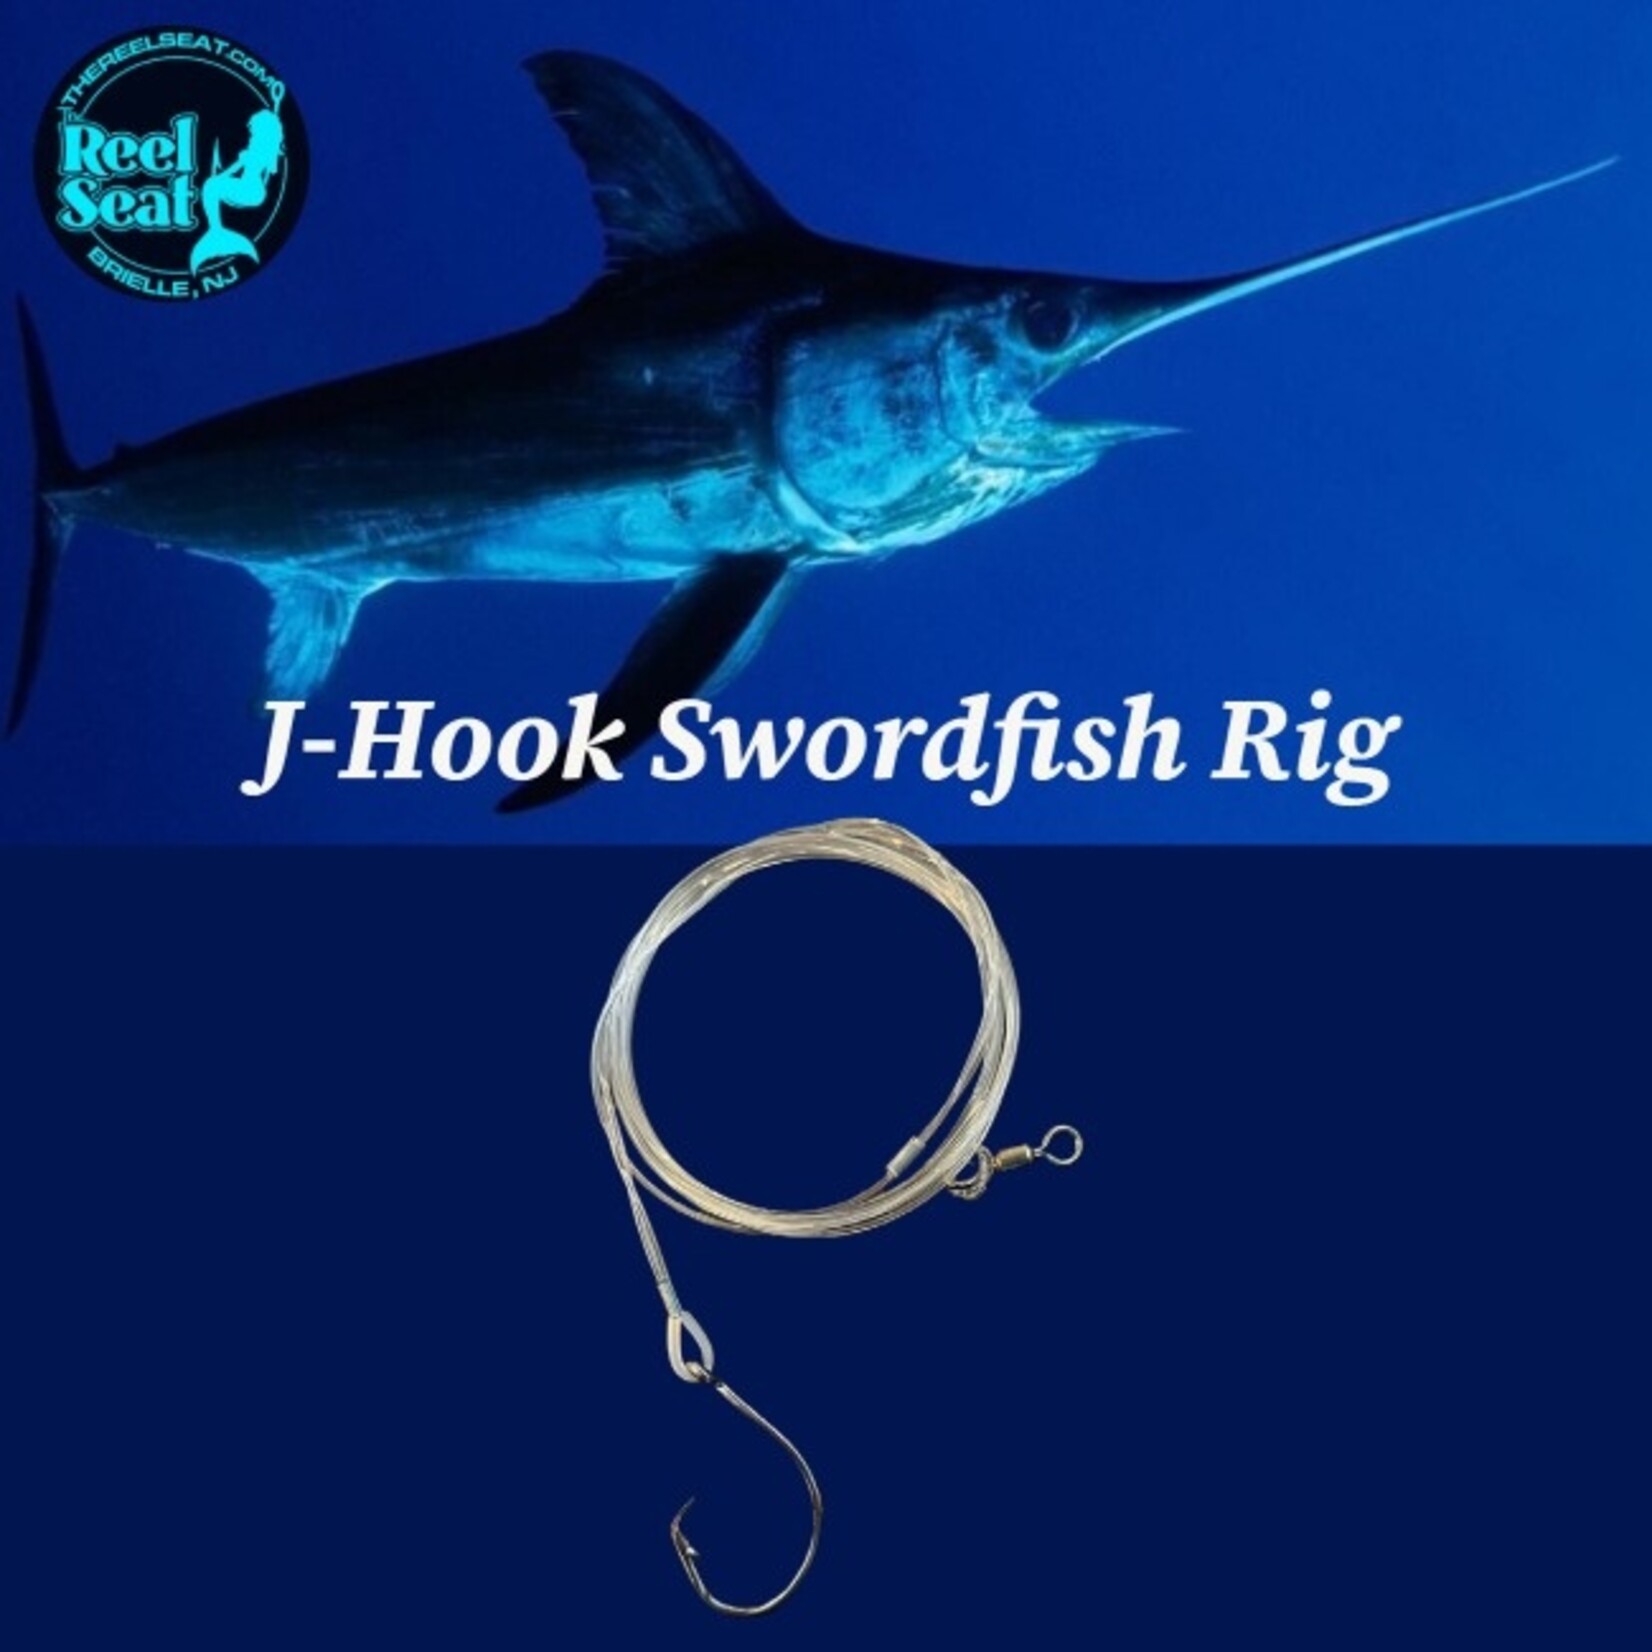 The Reel Seat RS J-Hook Swordfish Rig